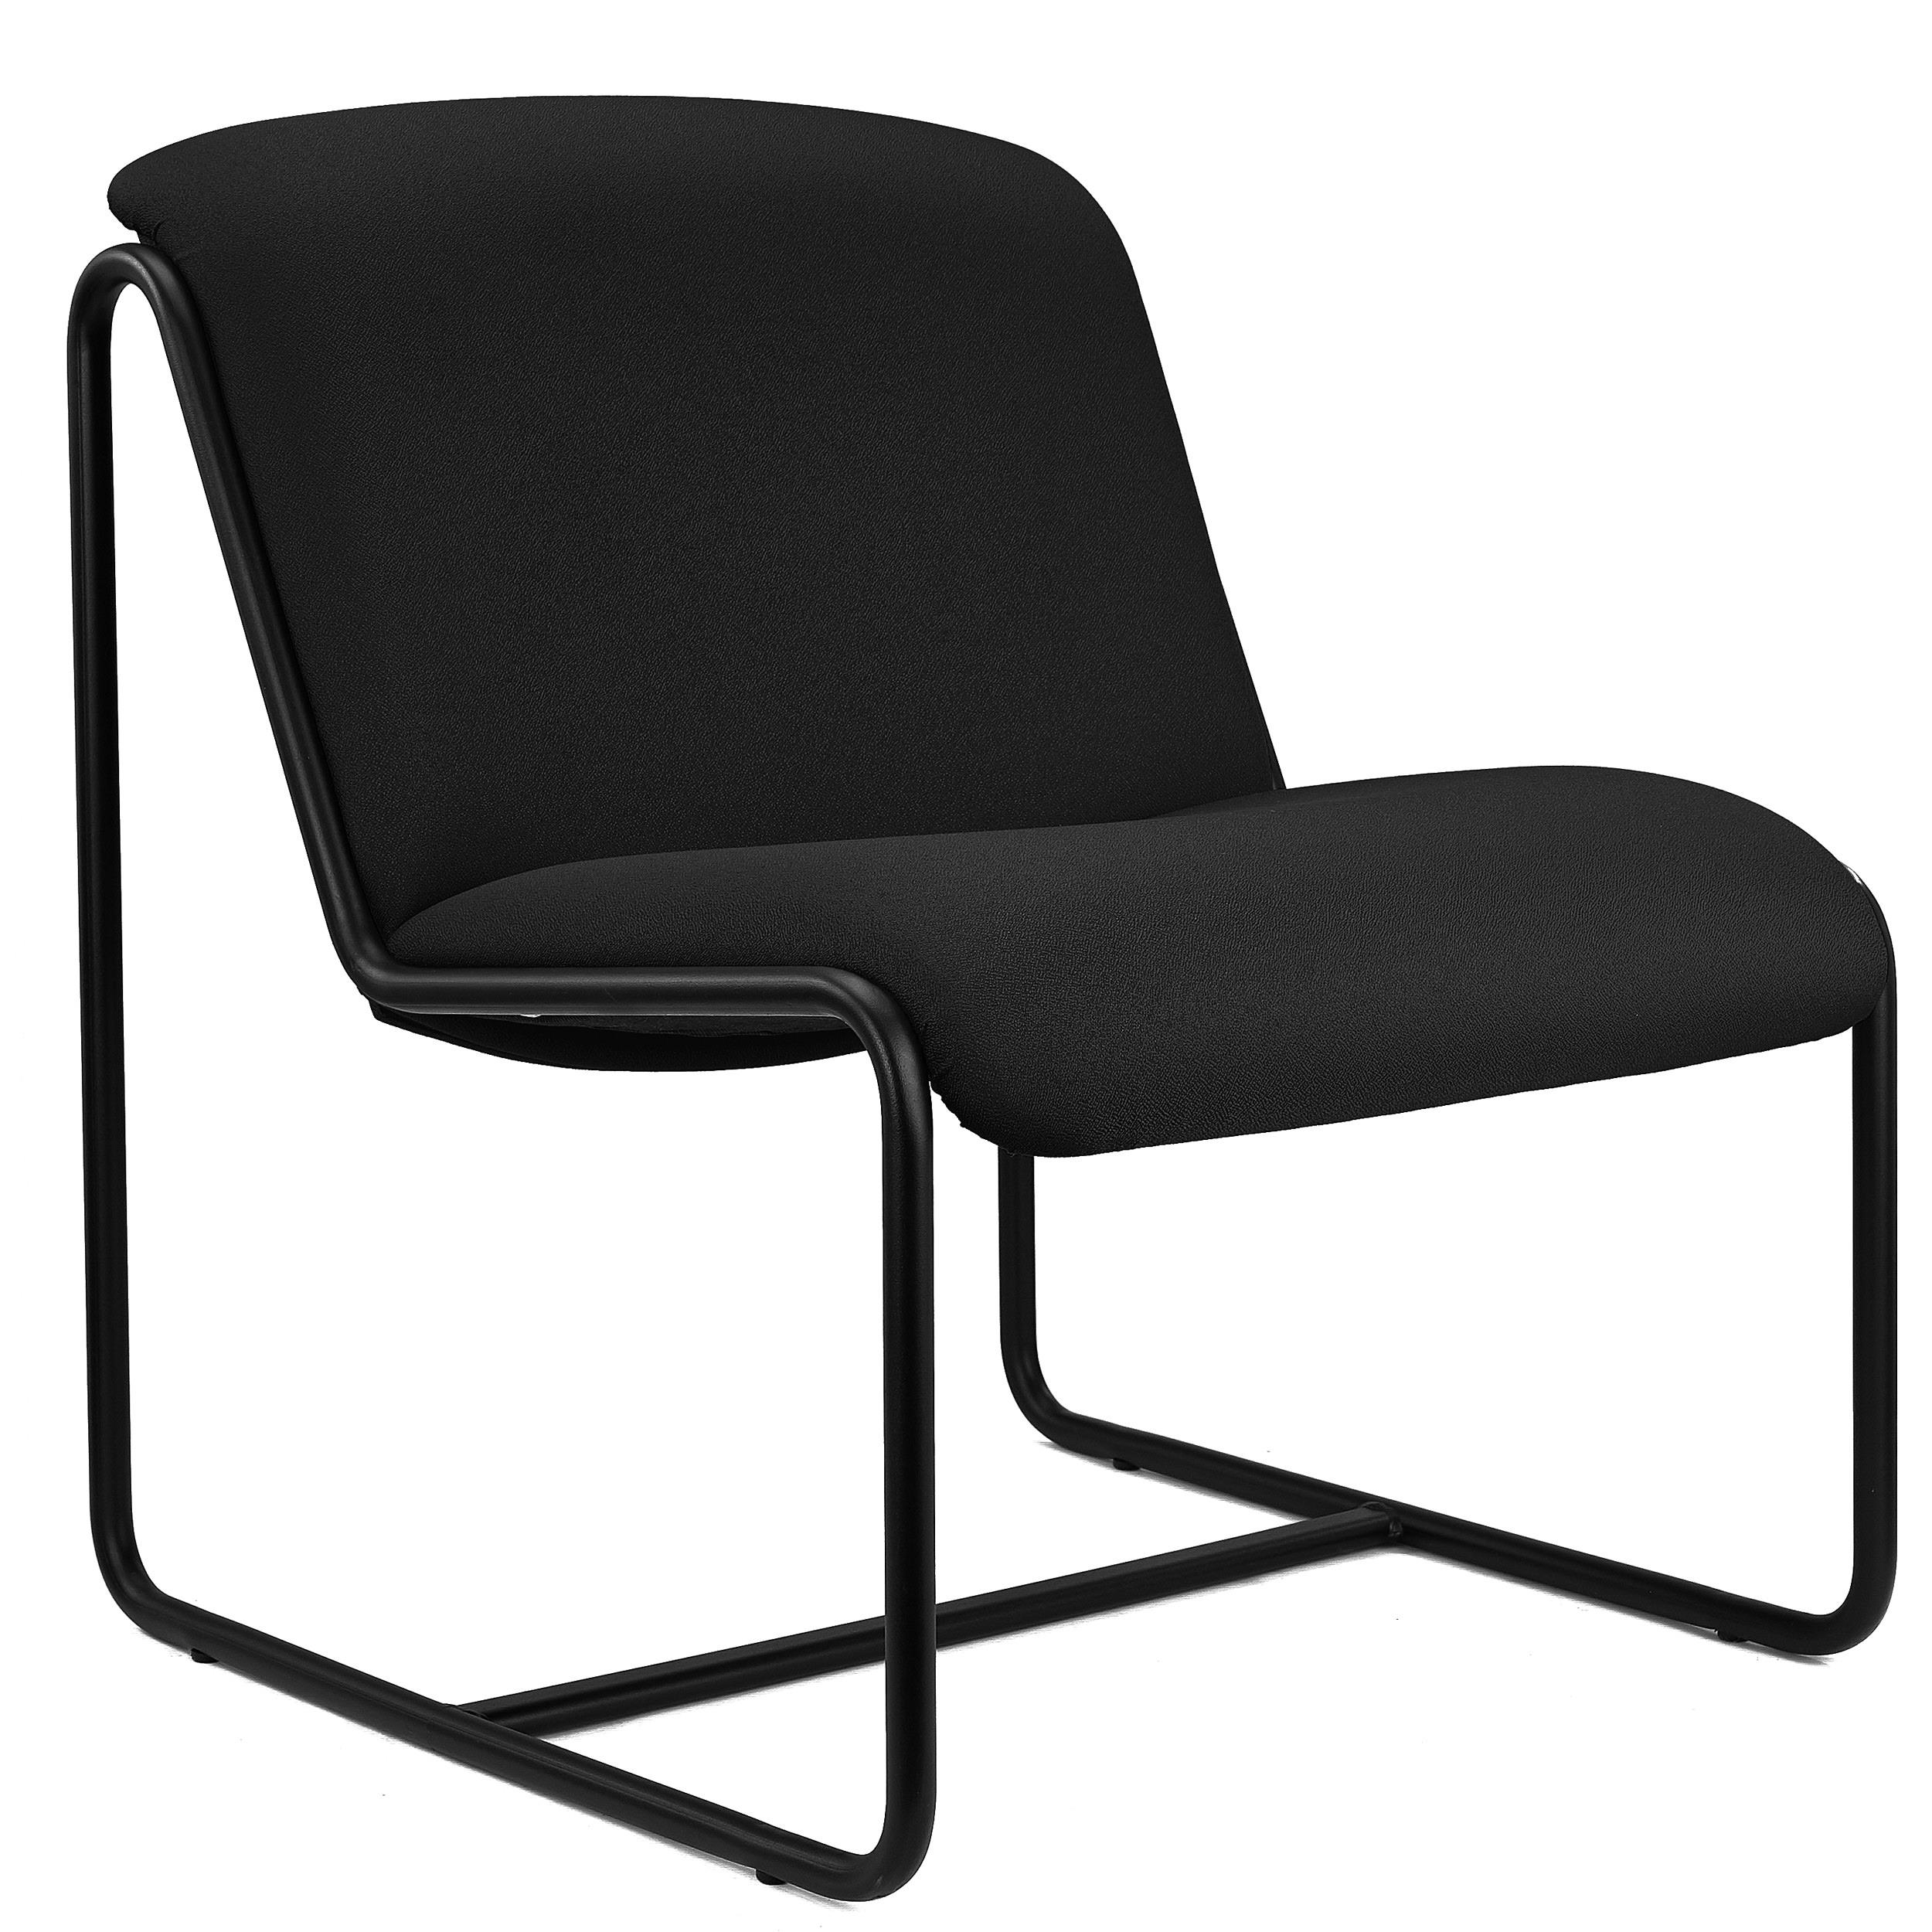 Chaise visiteur LIMA, Design Exclusif, Structure Métallique, en Tissu Noir